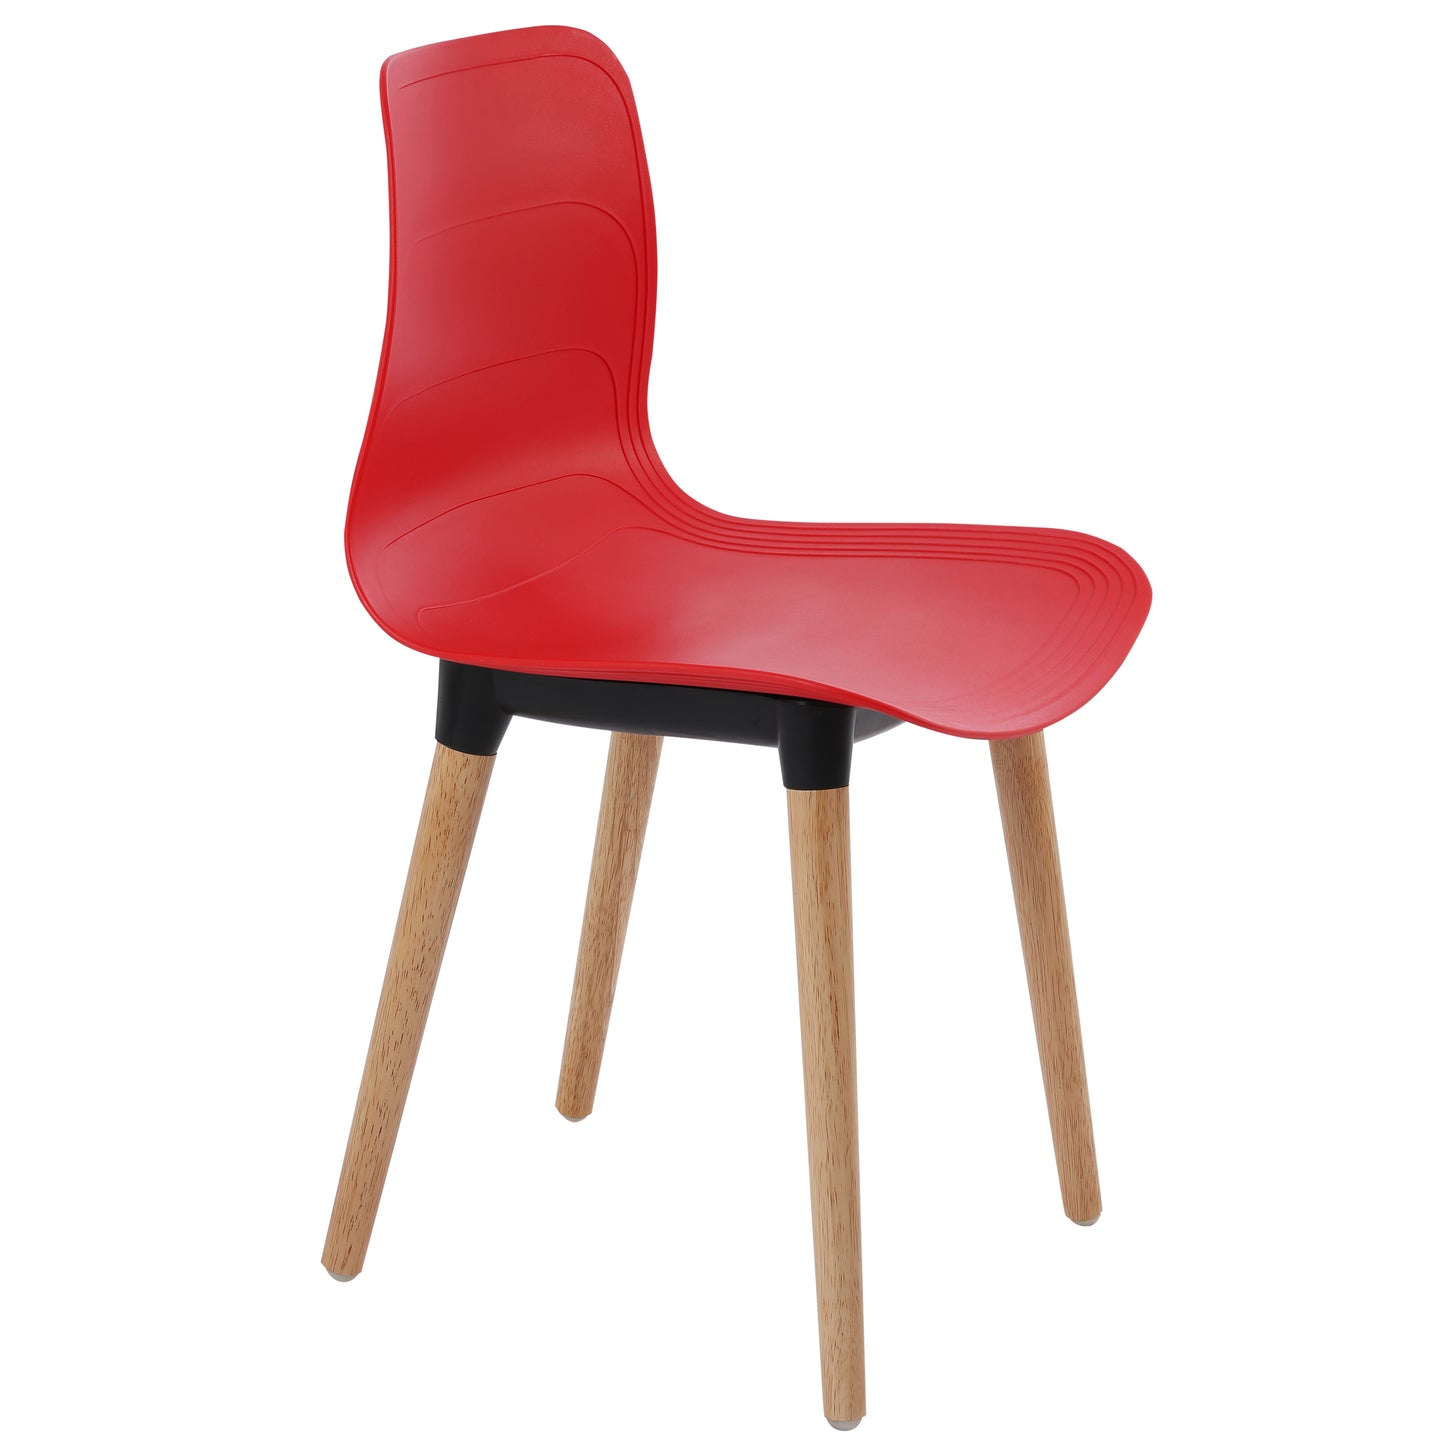 Ghế nhựa chân gỗ - HIFUWA - Hàng xuất khẩu - Màu đỏ